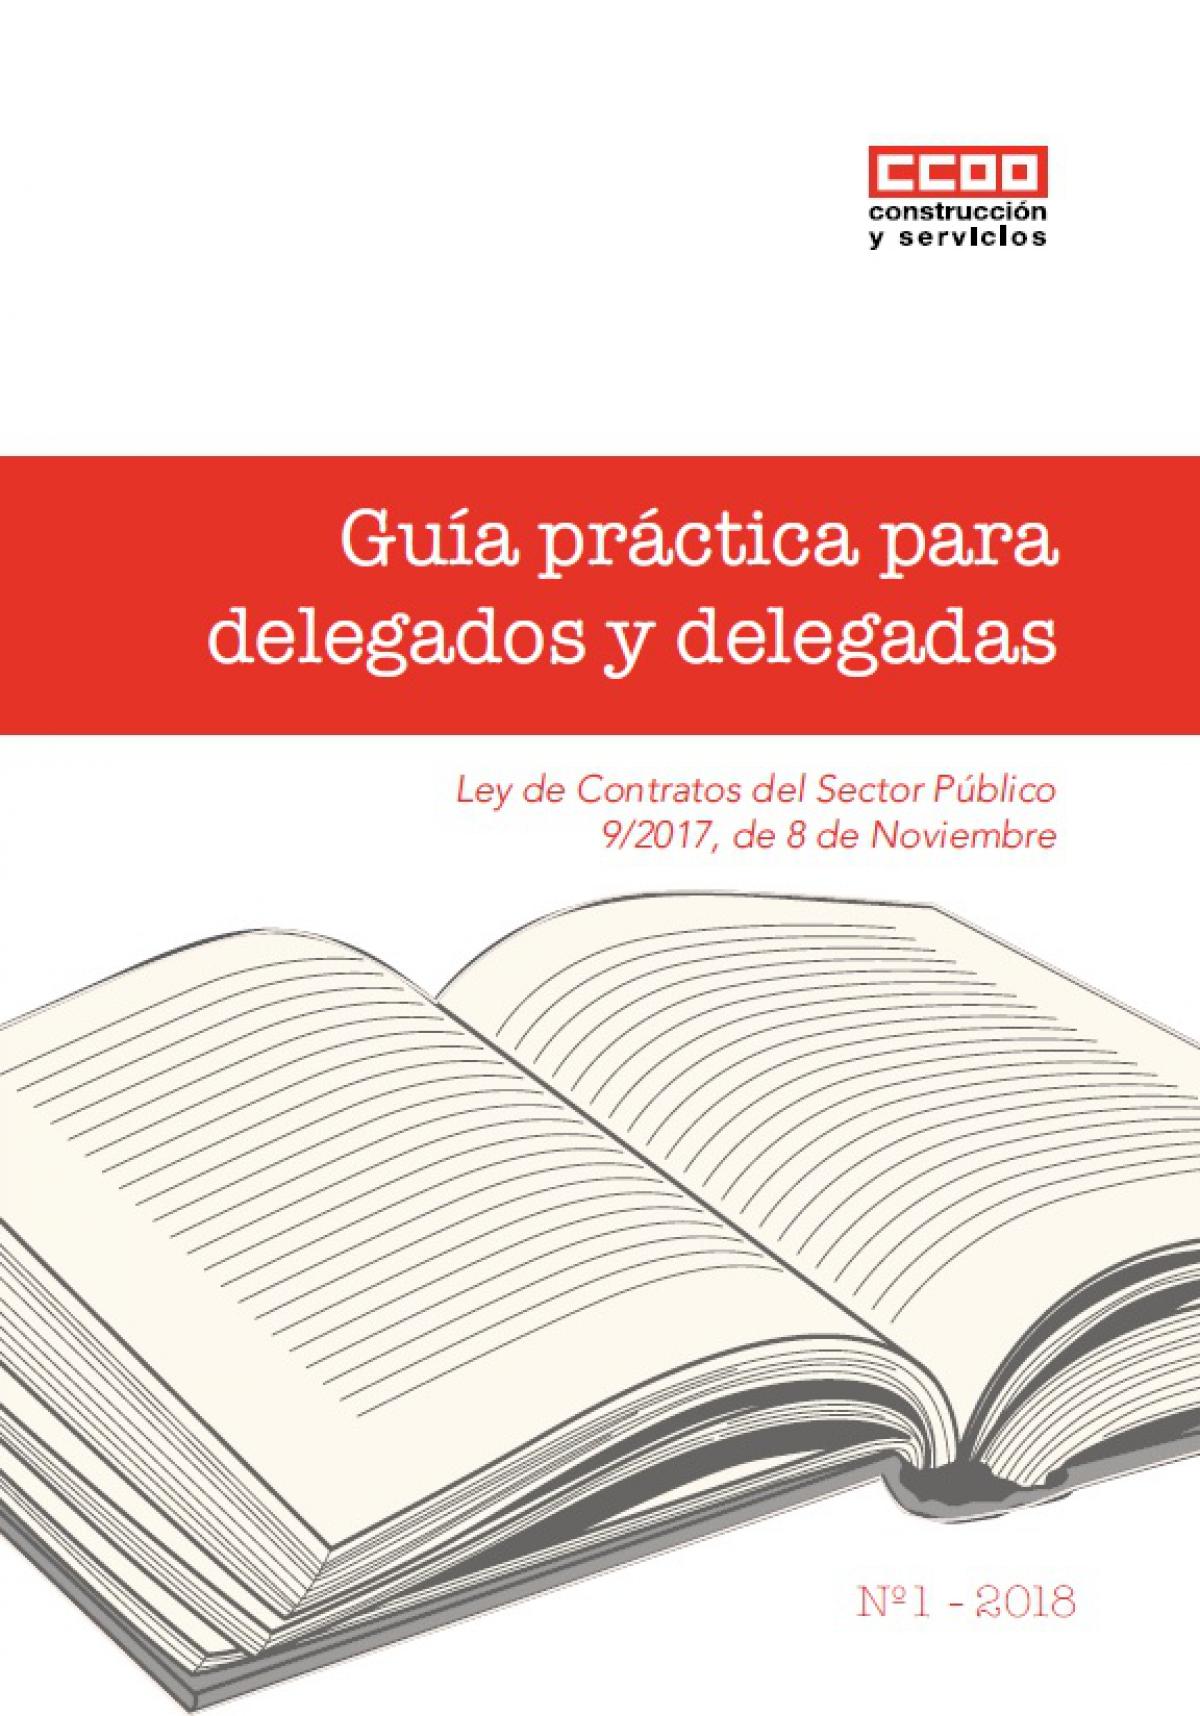 CCOO de Construccin y Servicios edita una Gua prctica para delegados y delegadas